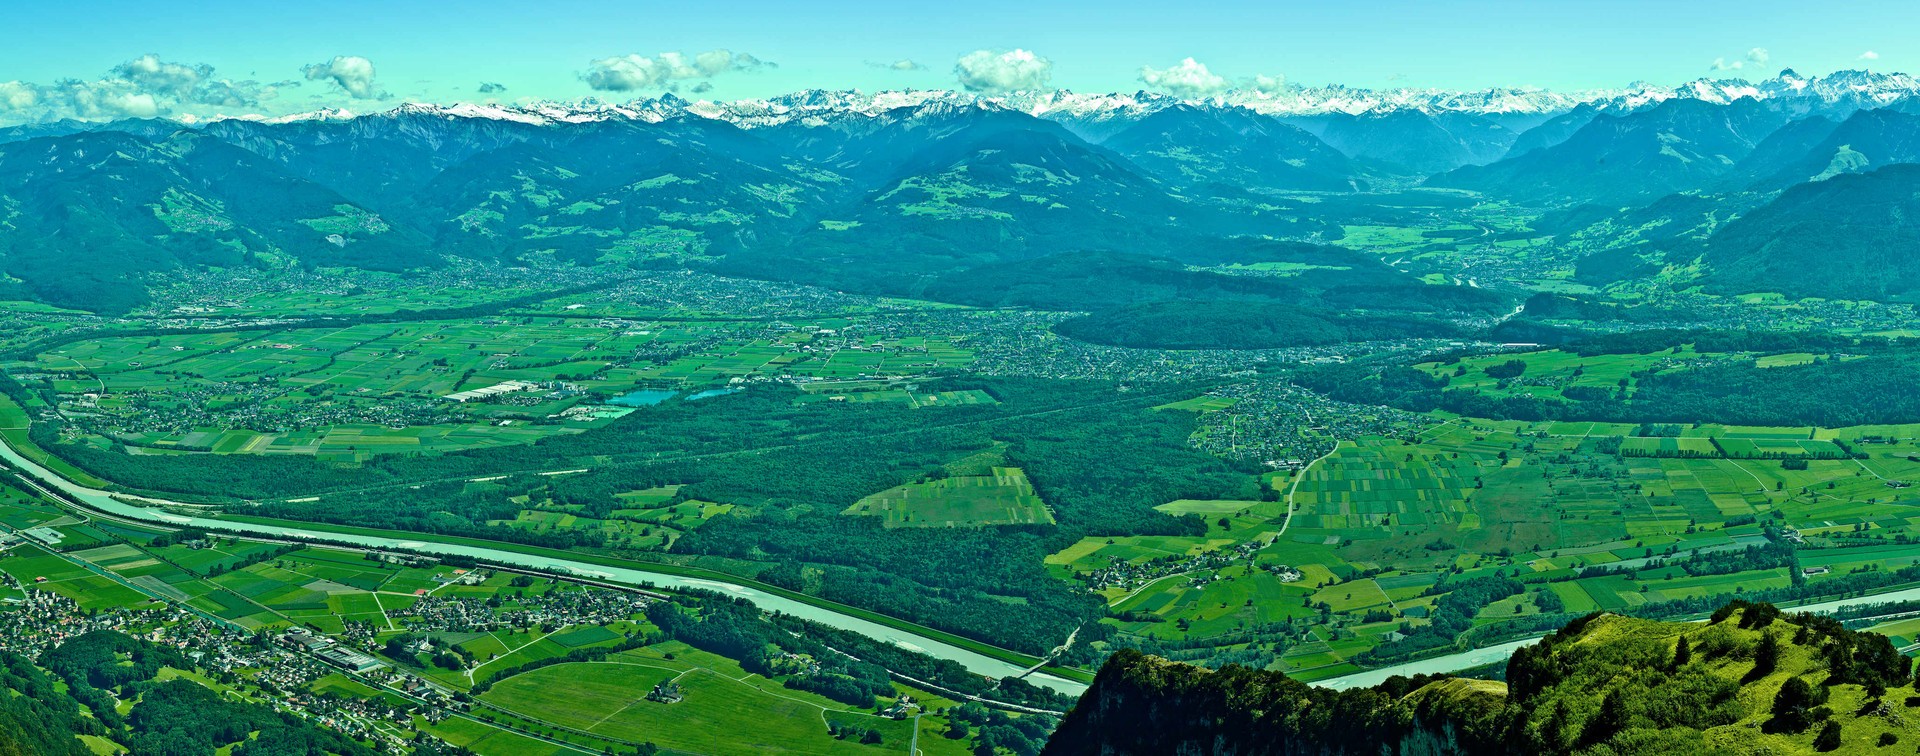 Stadt & Land, Berg & Tal, Groß & Klein: Die Region Vorderland-Feldkirch zeichnet sich mit ihren 13 Gemeinden durch eine außerordentlich große Vielfalt aus.